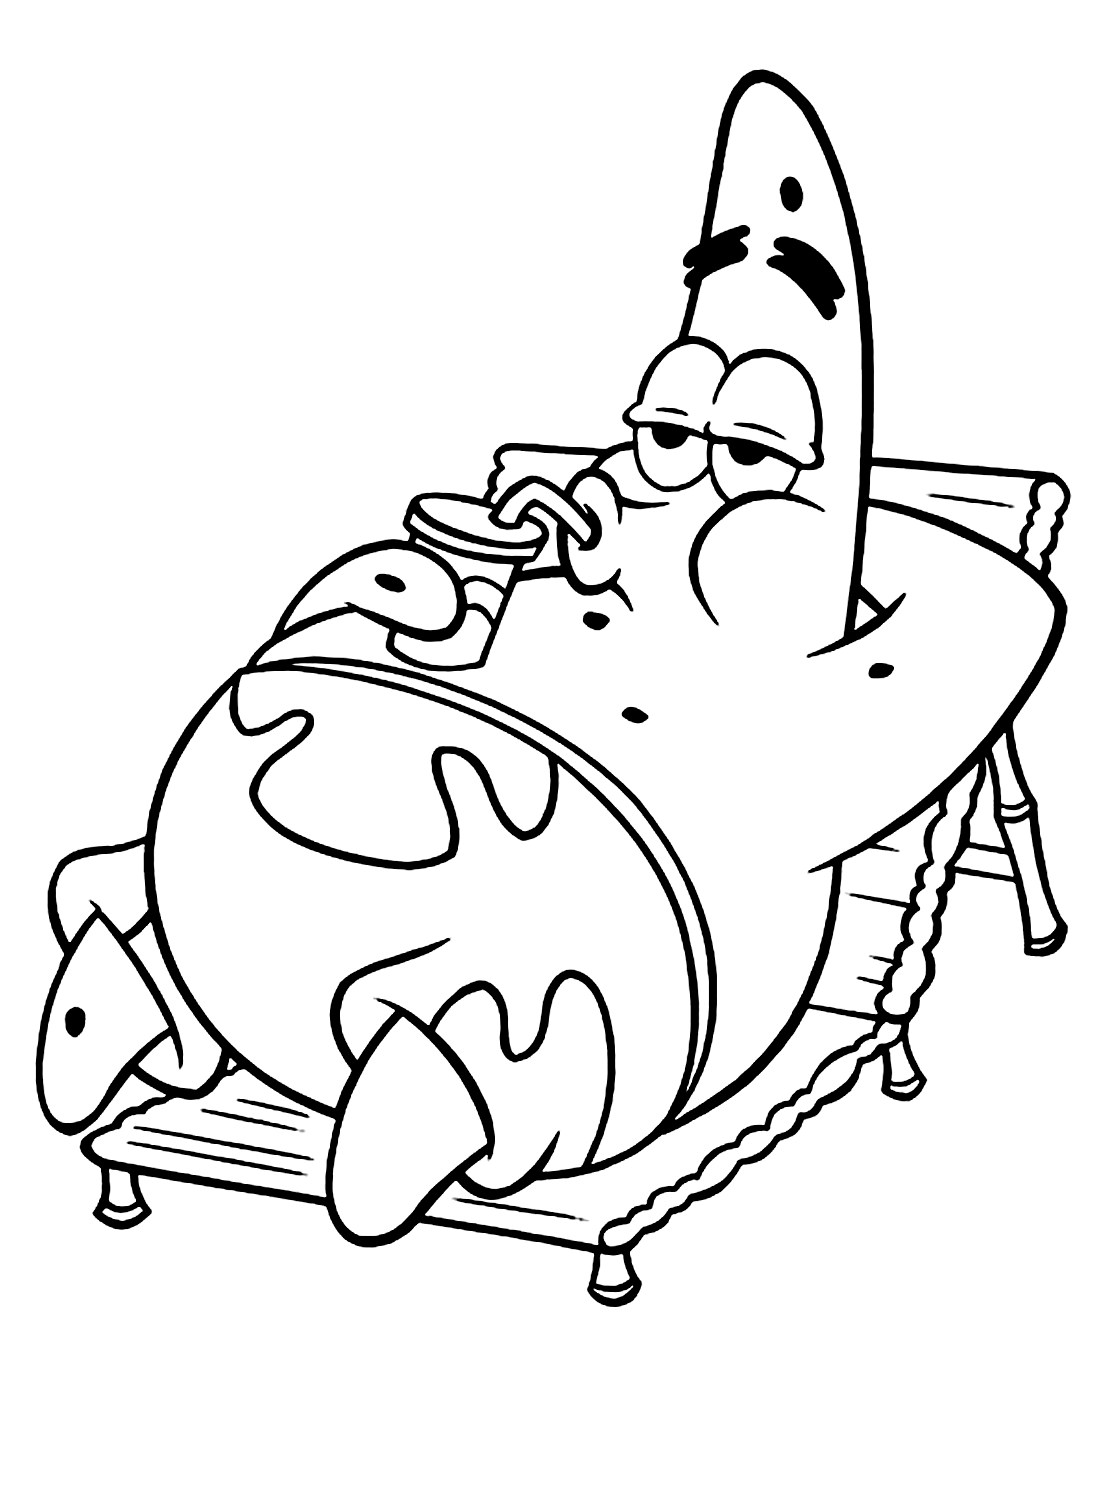 Entspannendes Patrick-Farbbild von Spongebob